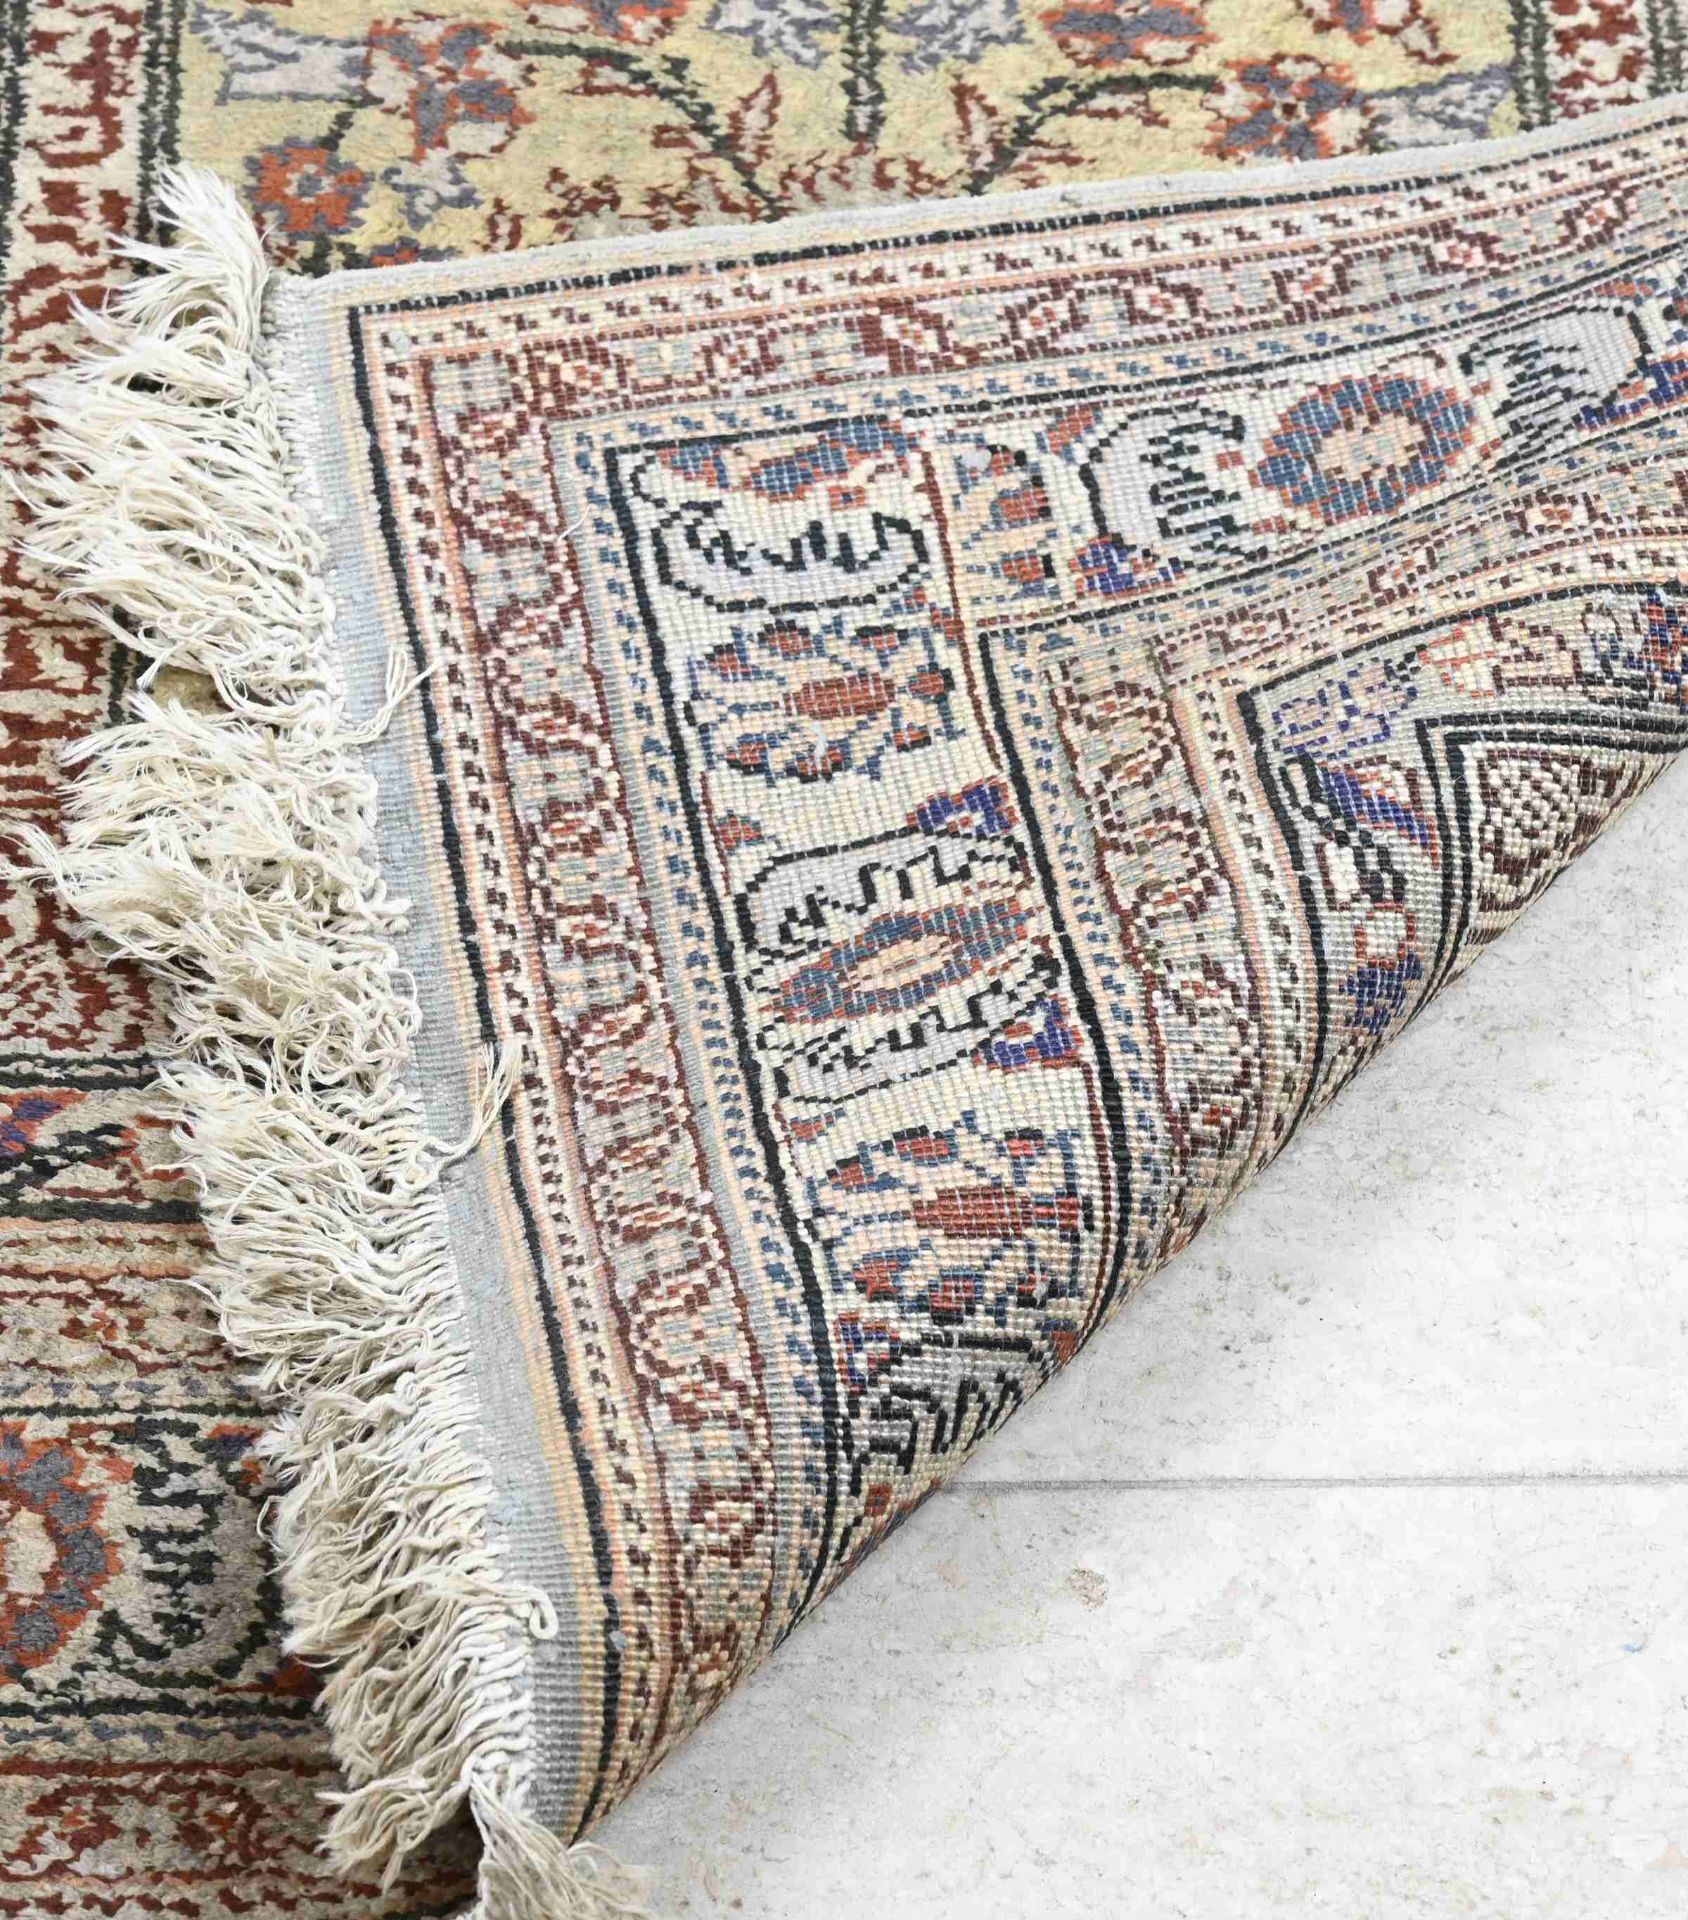 Persian prayer rug, 142 x 88 cm. - Image 3 of 3